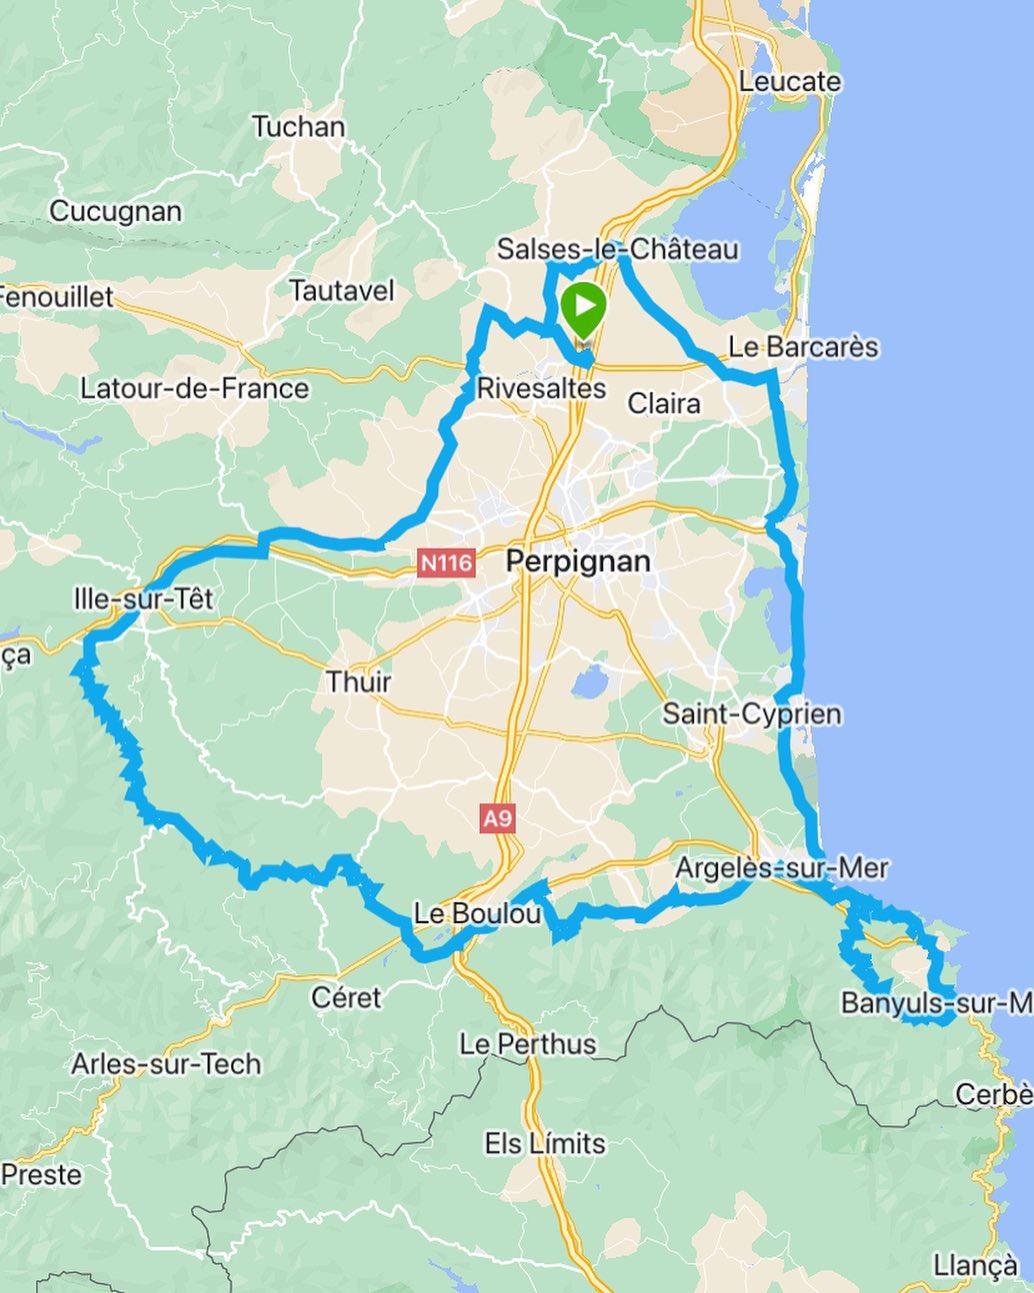 >> Parcours du Training 200kms du 12 Mars
Et toutes les infos sont en Story à la Une 
#ultradistance #ubf #perpignan #rivesaltes #cyclesmoreno @ultrabikefrance